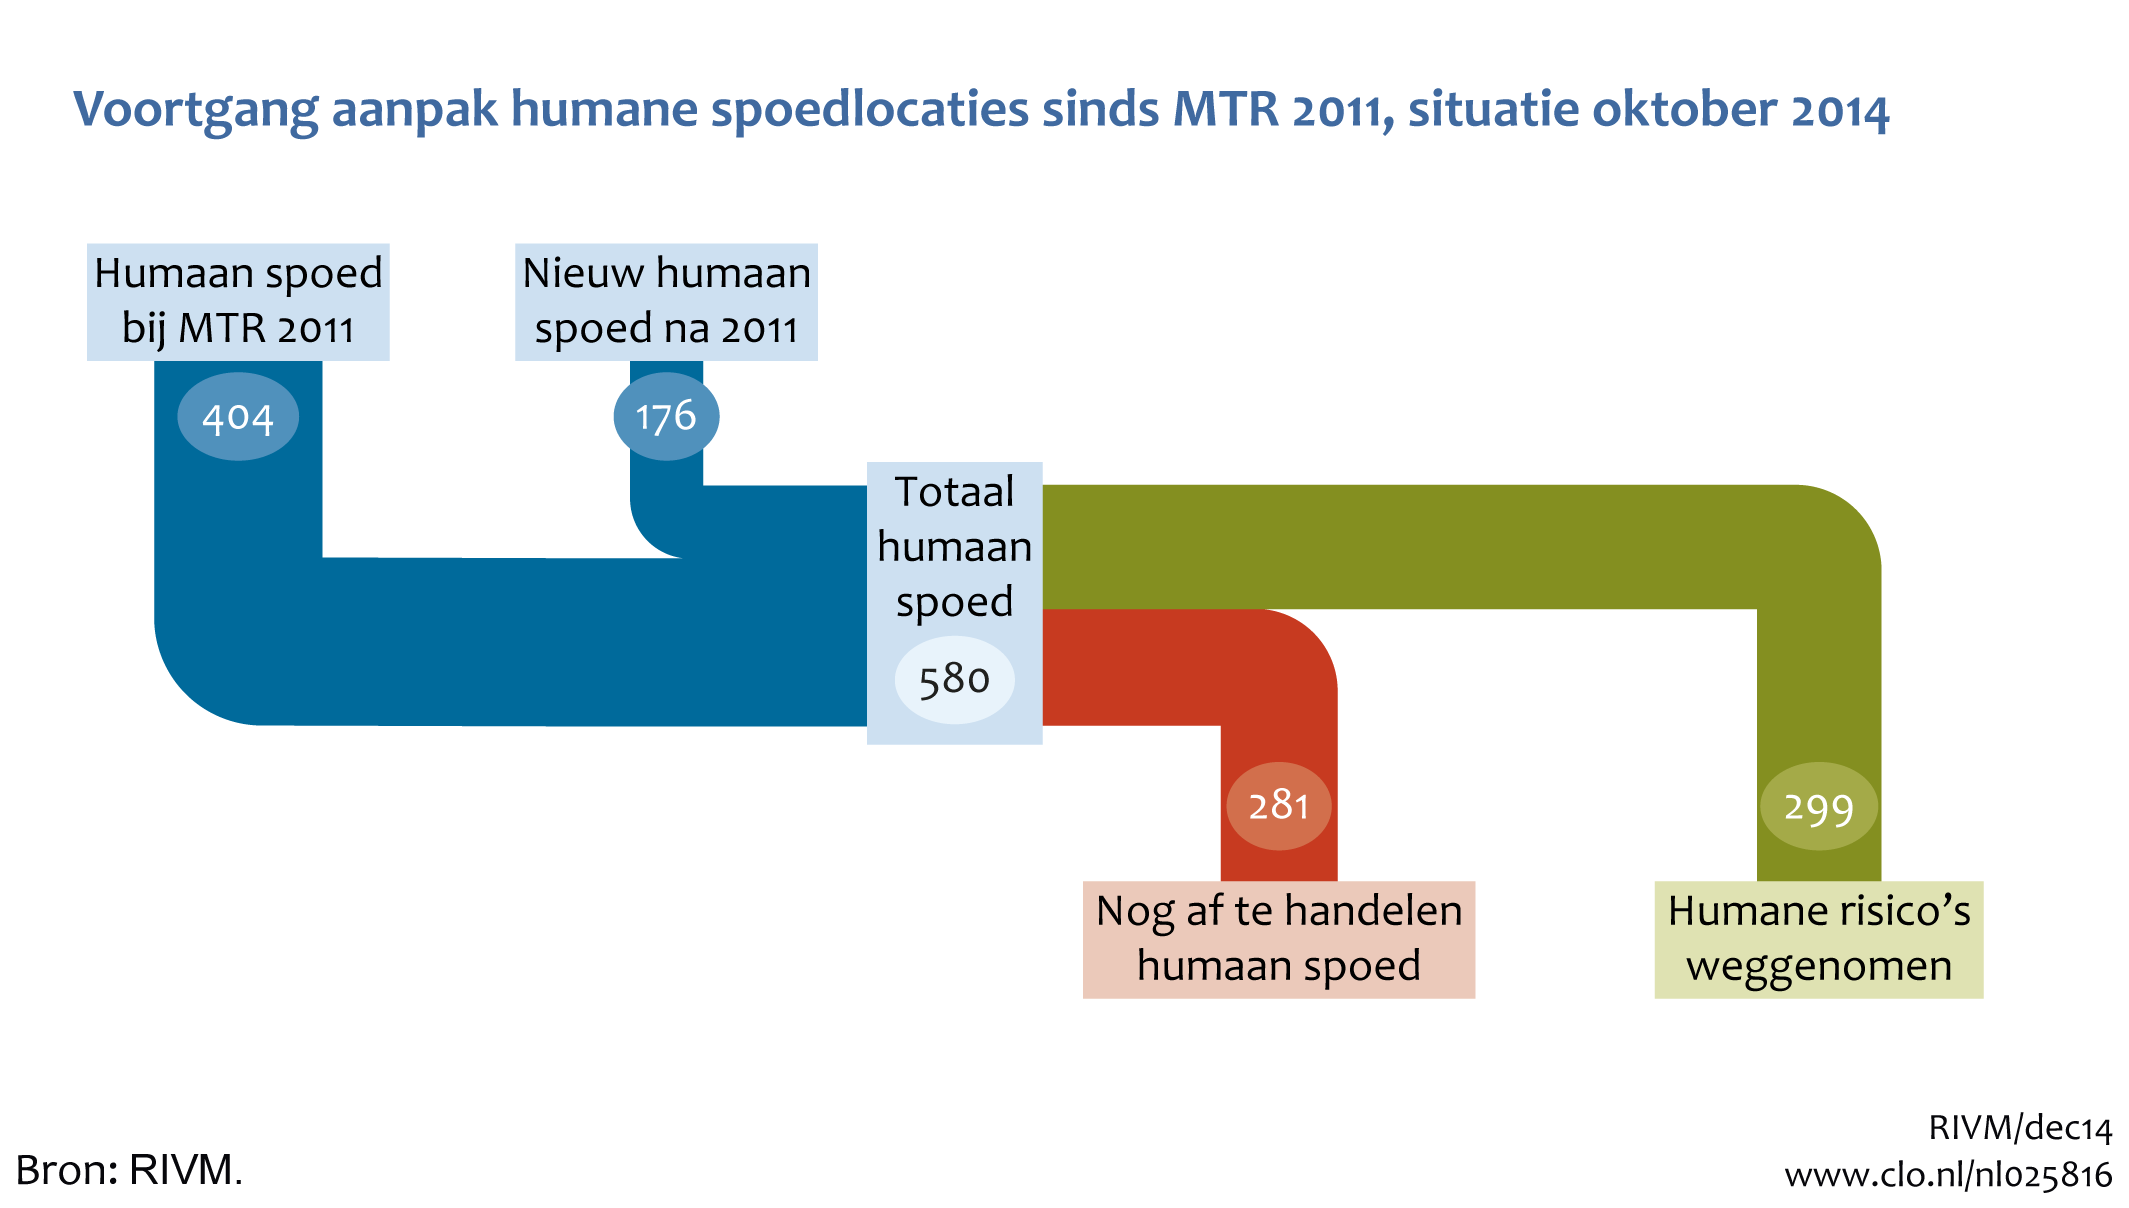 Figuur Humane spoedlocaties in 2011 en 2014. In de rest van de tekst wordt deze figuur uitgebreider uitgelegd.